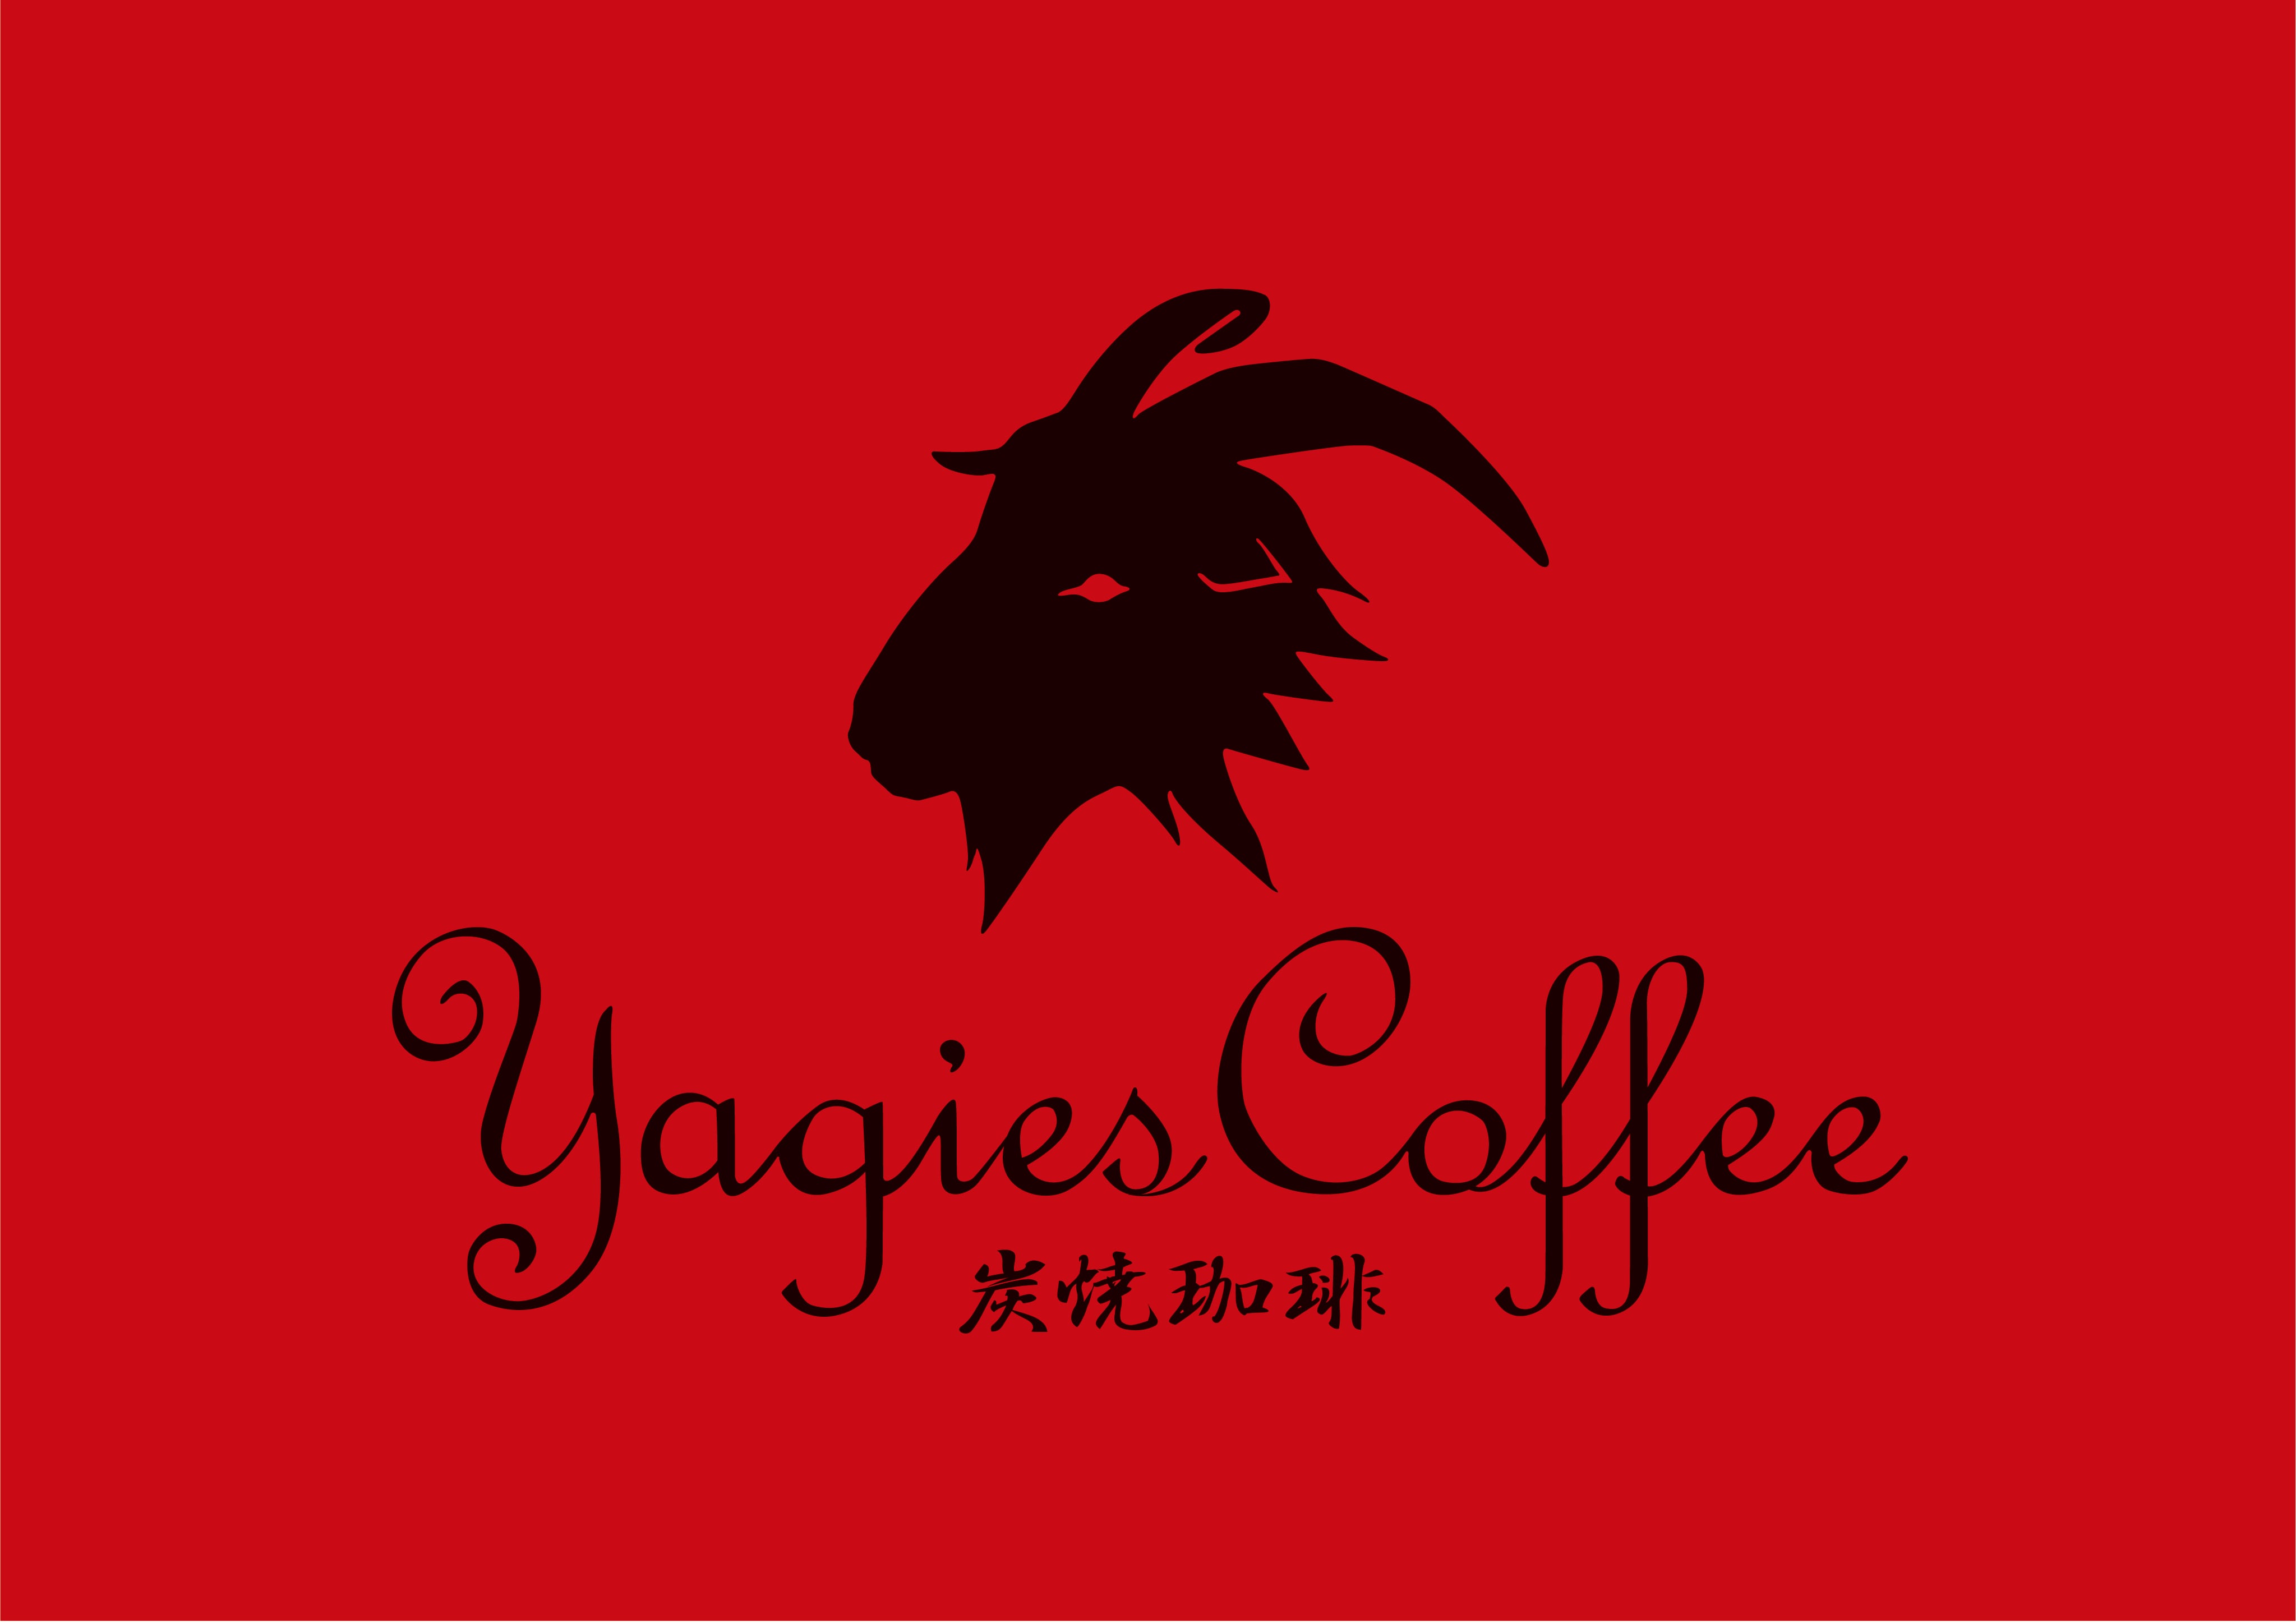 Yagies Coffee